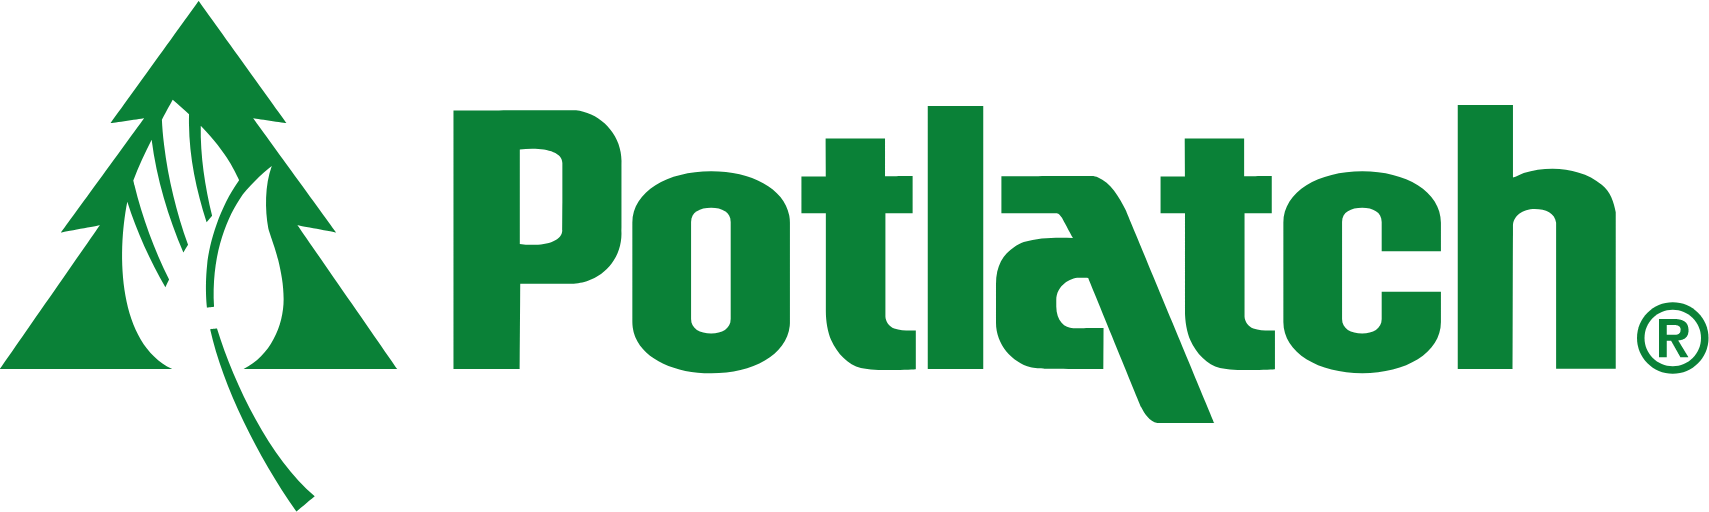 PotlatchDeltic
 logo large (transparent PNG)